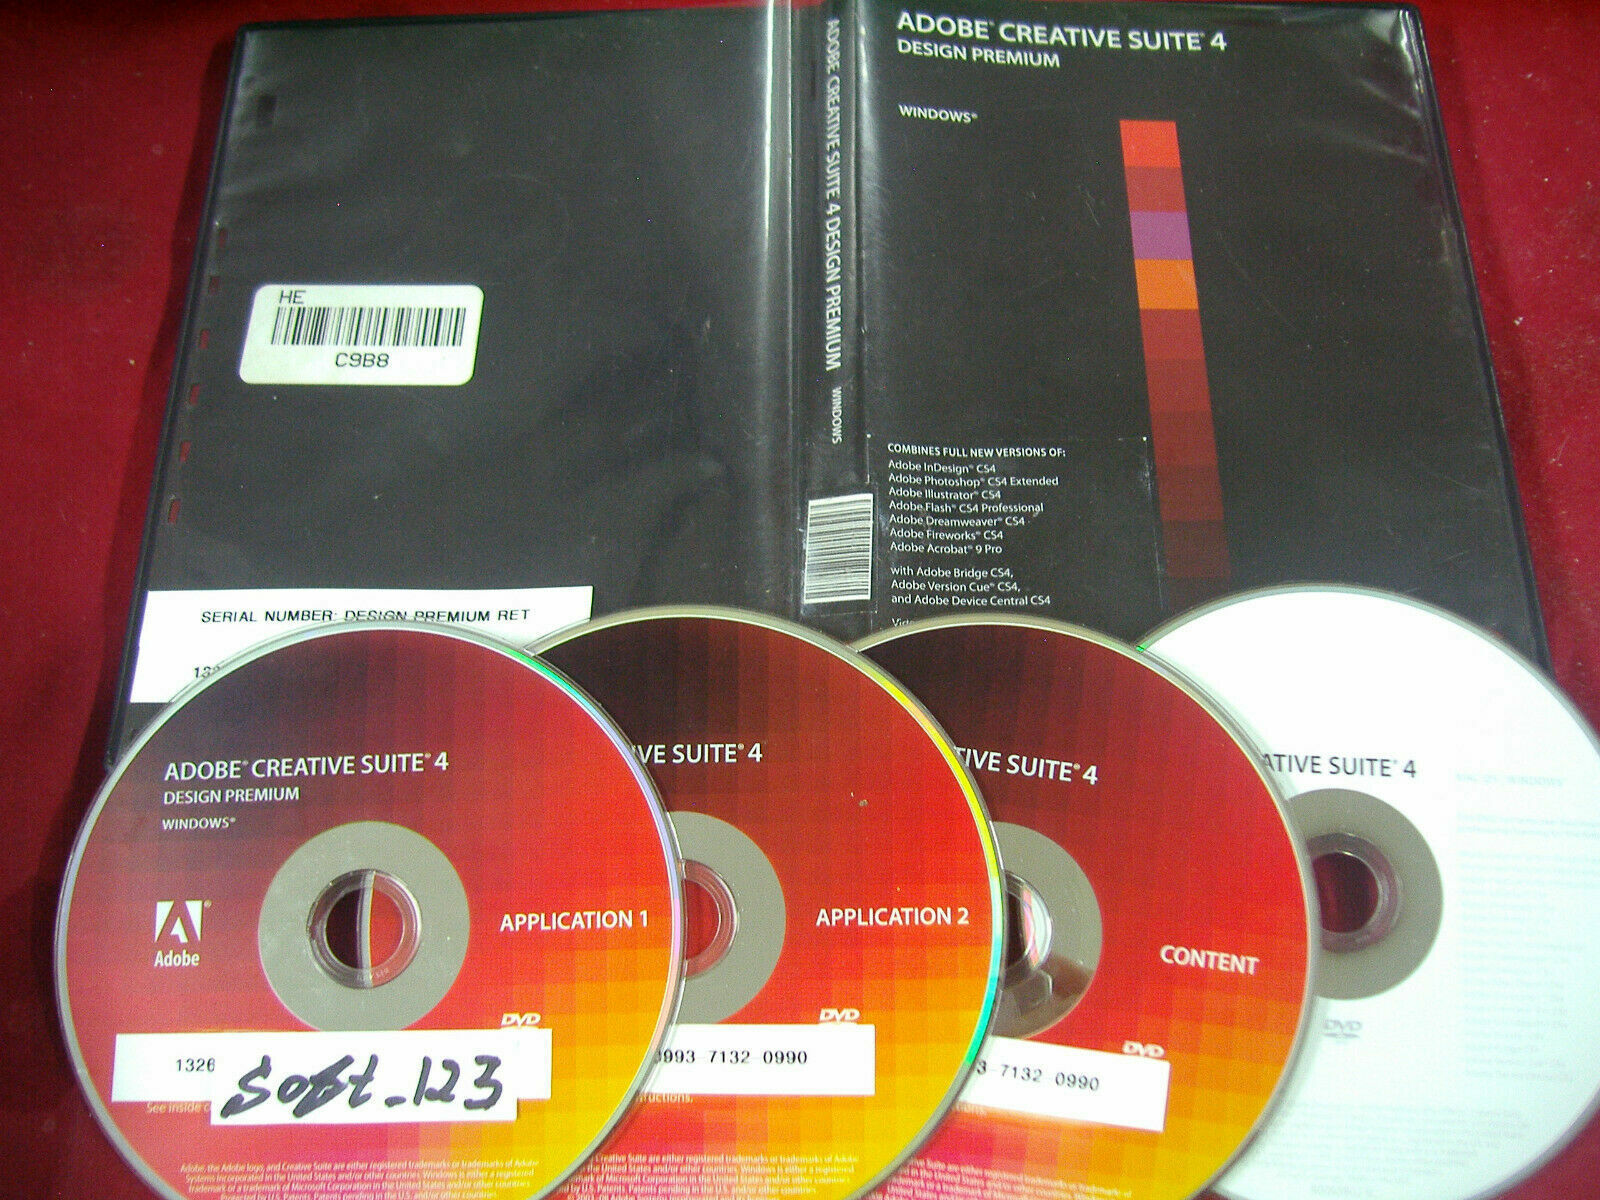 Adobe Creative Suite 4 CS4 Design Premium For Windows Full Retai DVD Version